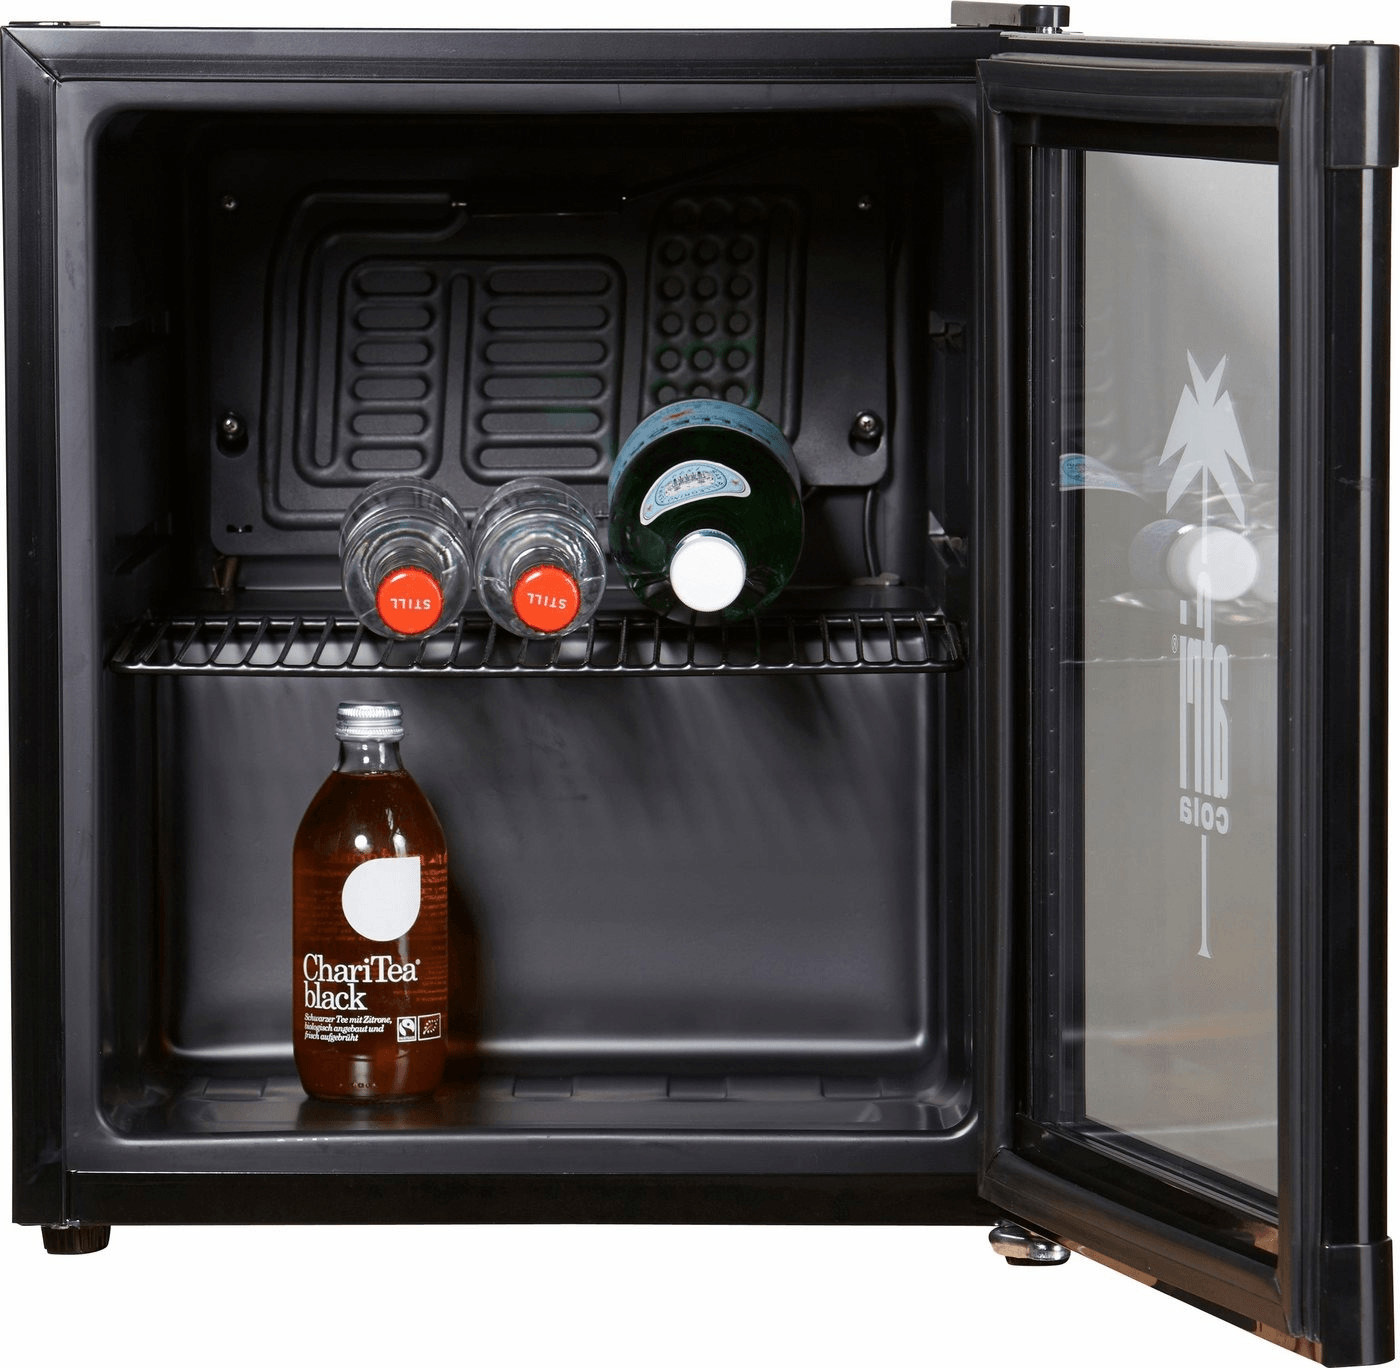 Mini-Kühlschrank 2in1 Kühl- und Heizfunktion für Getränke/Dosen Coca Cola  Afri Cola Corona Becks - tragbar in Schwarz